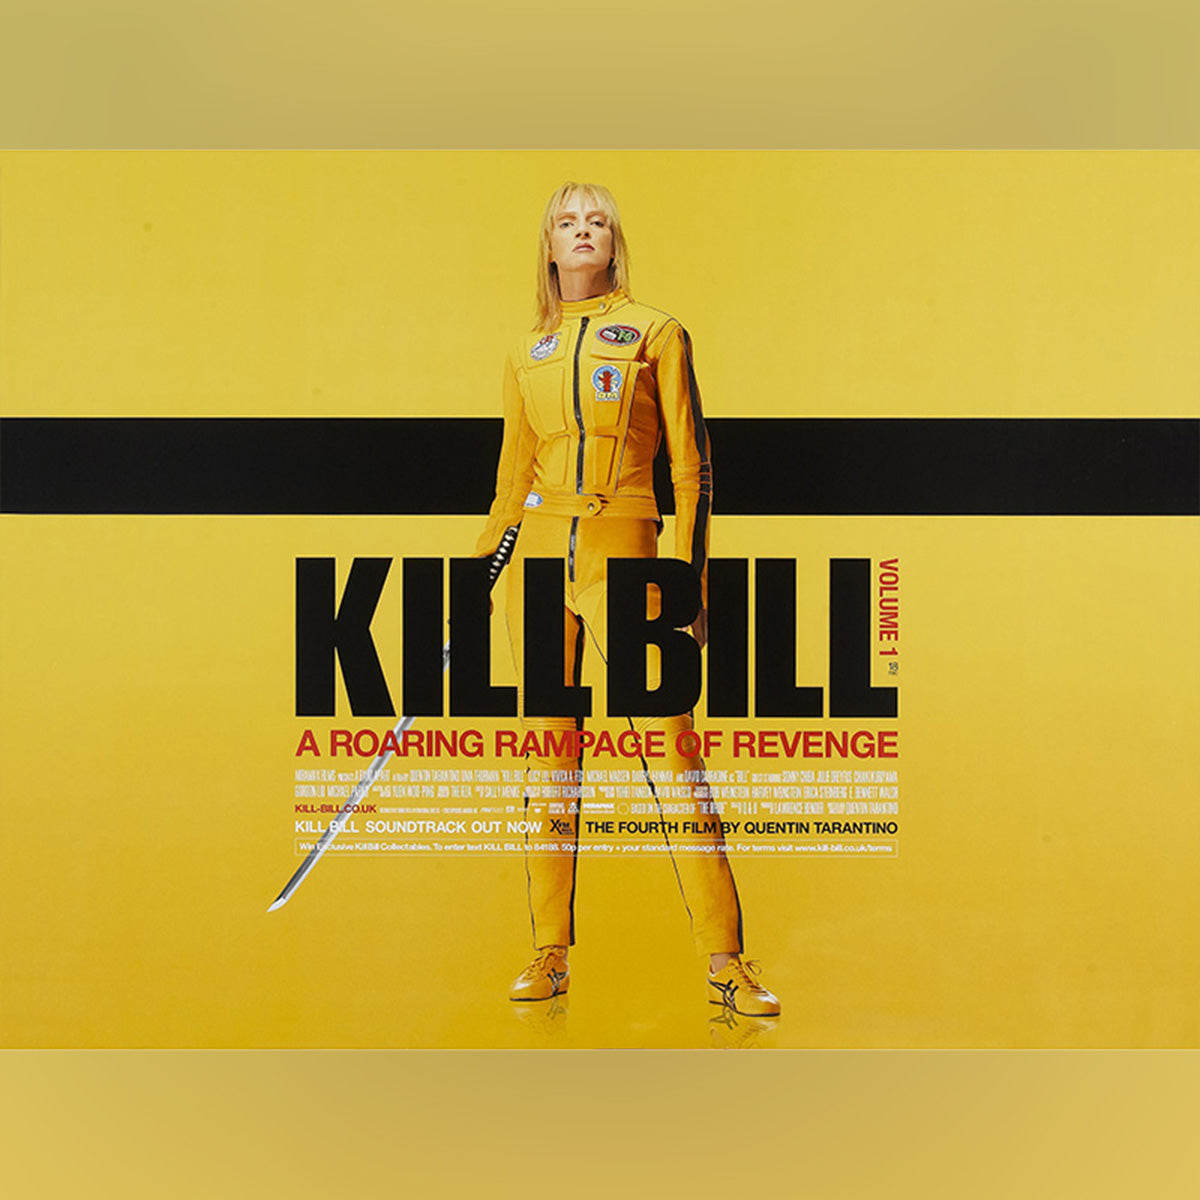 Original Movie Poster of Kill Bill: Vol. 1 (2003)